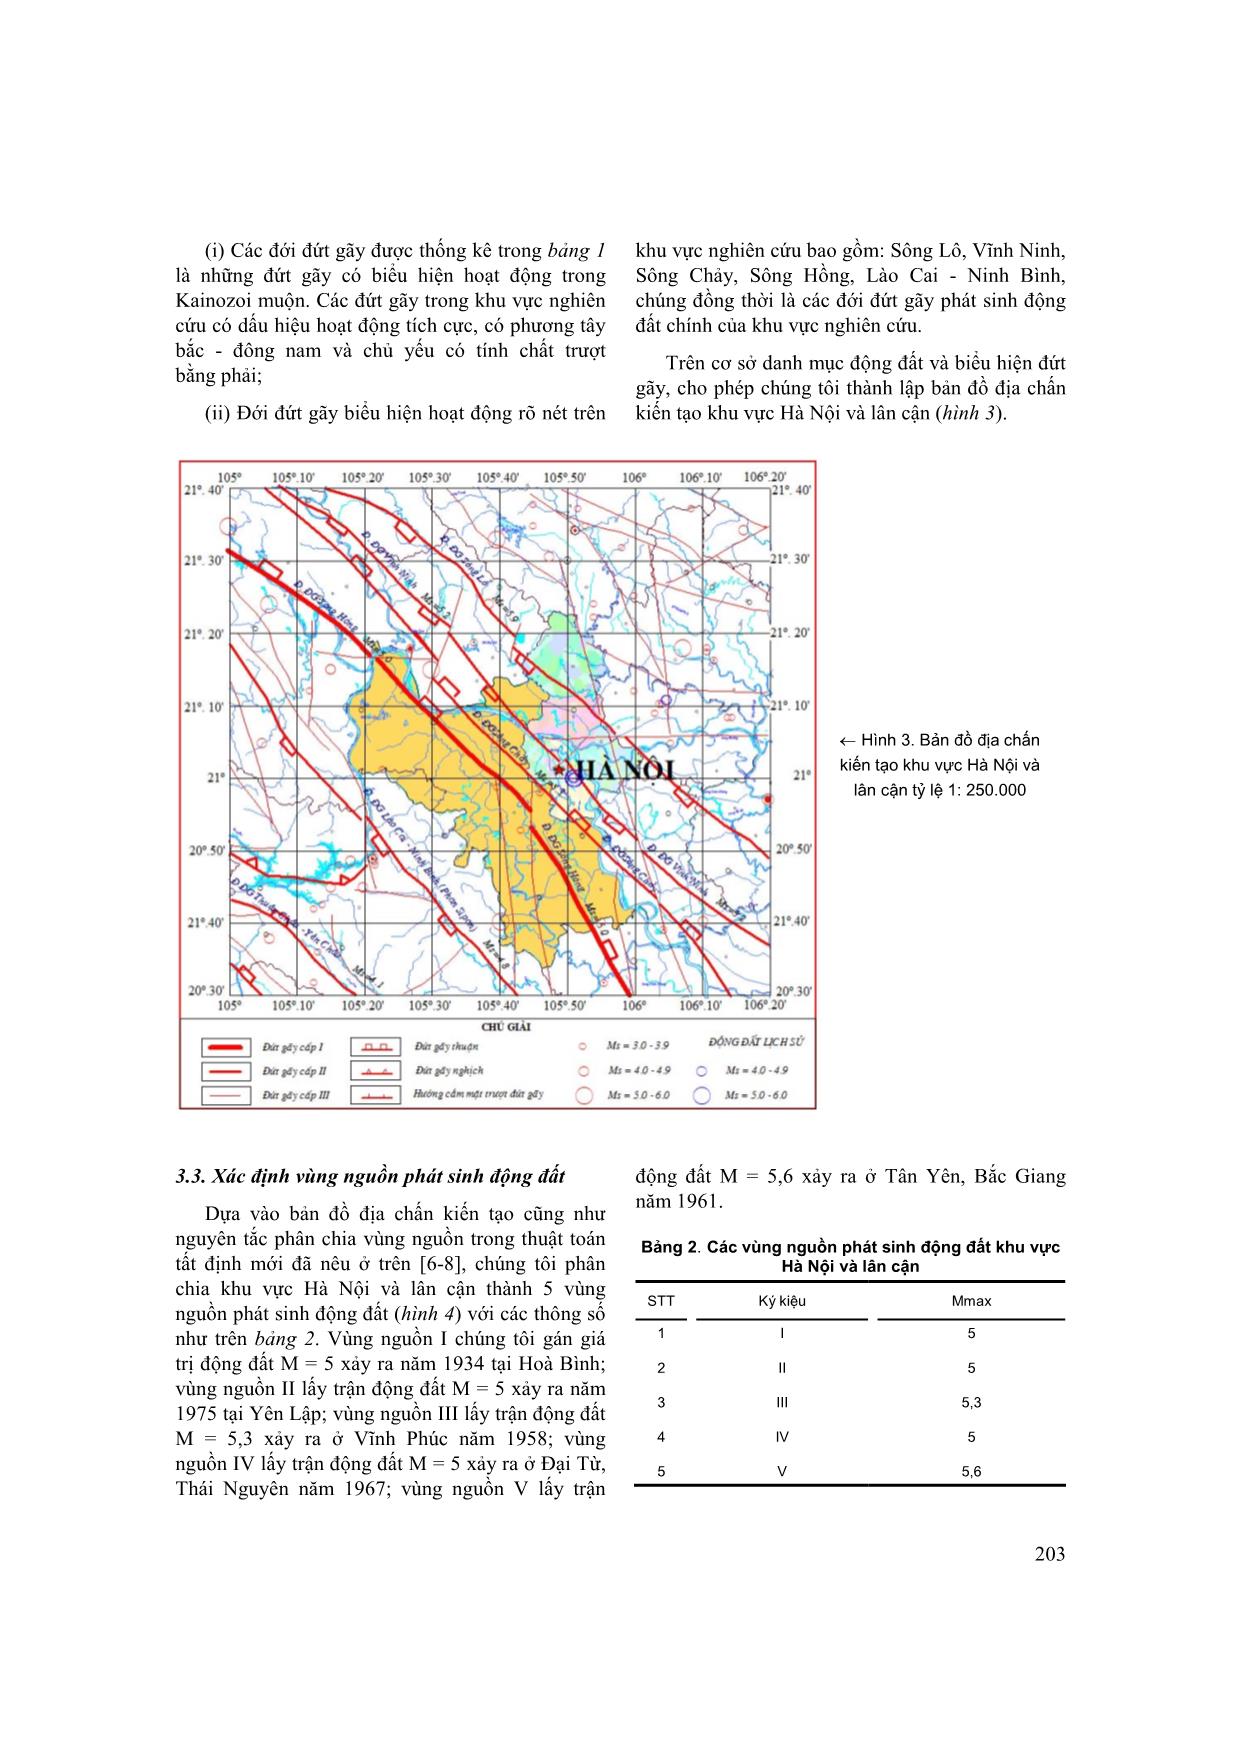 Đánh giá độ nguy hiểm động đất khu vực thành phố Hà Nội và lân cận trên cơ sở thuật toán tất định mới trang 4